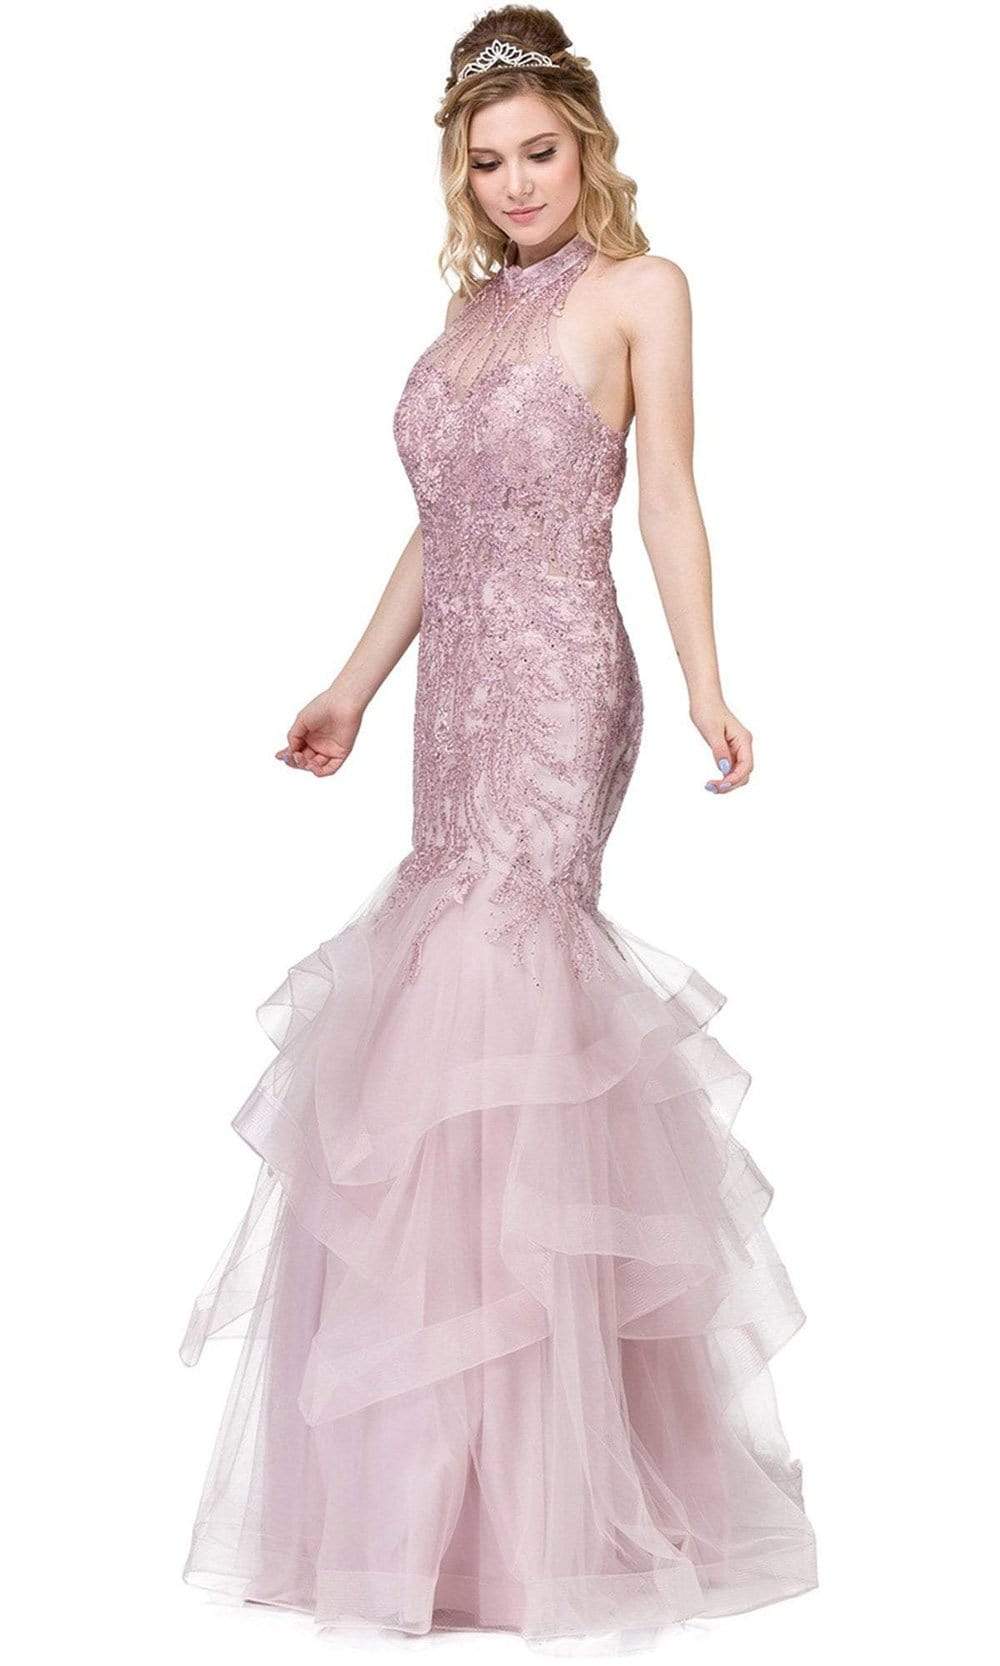 Image of Dancing Queen - 2447 Gold Applique Halter Tiered Mermaid Prom Dress